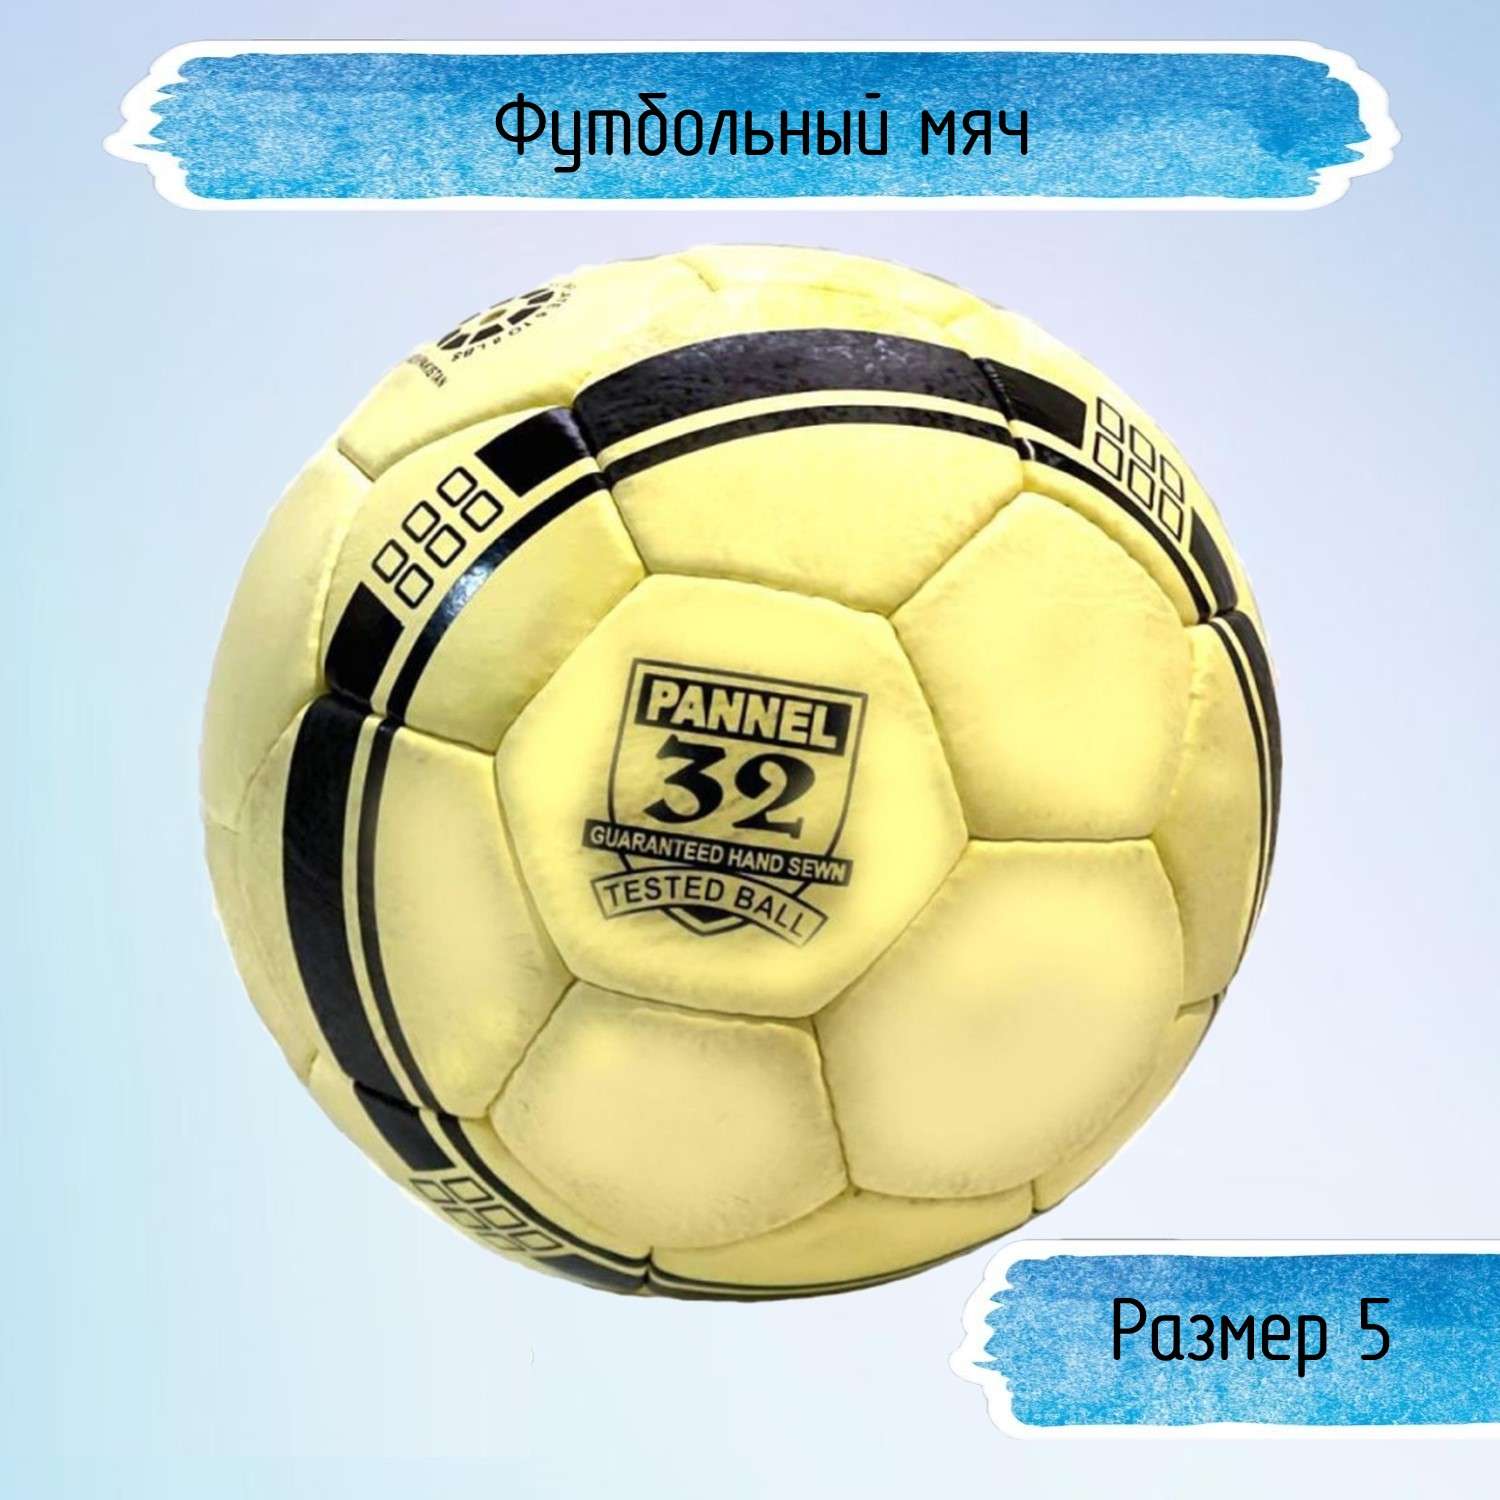 Футбольный мяч Uniglodis размер 5 желто-черный - фото 1